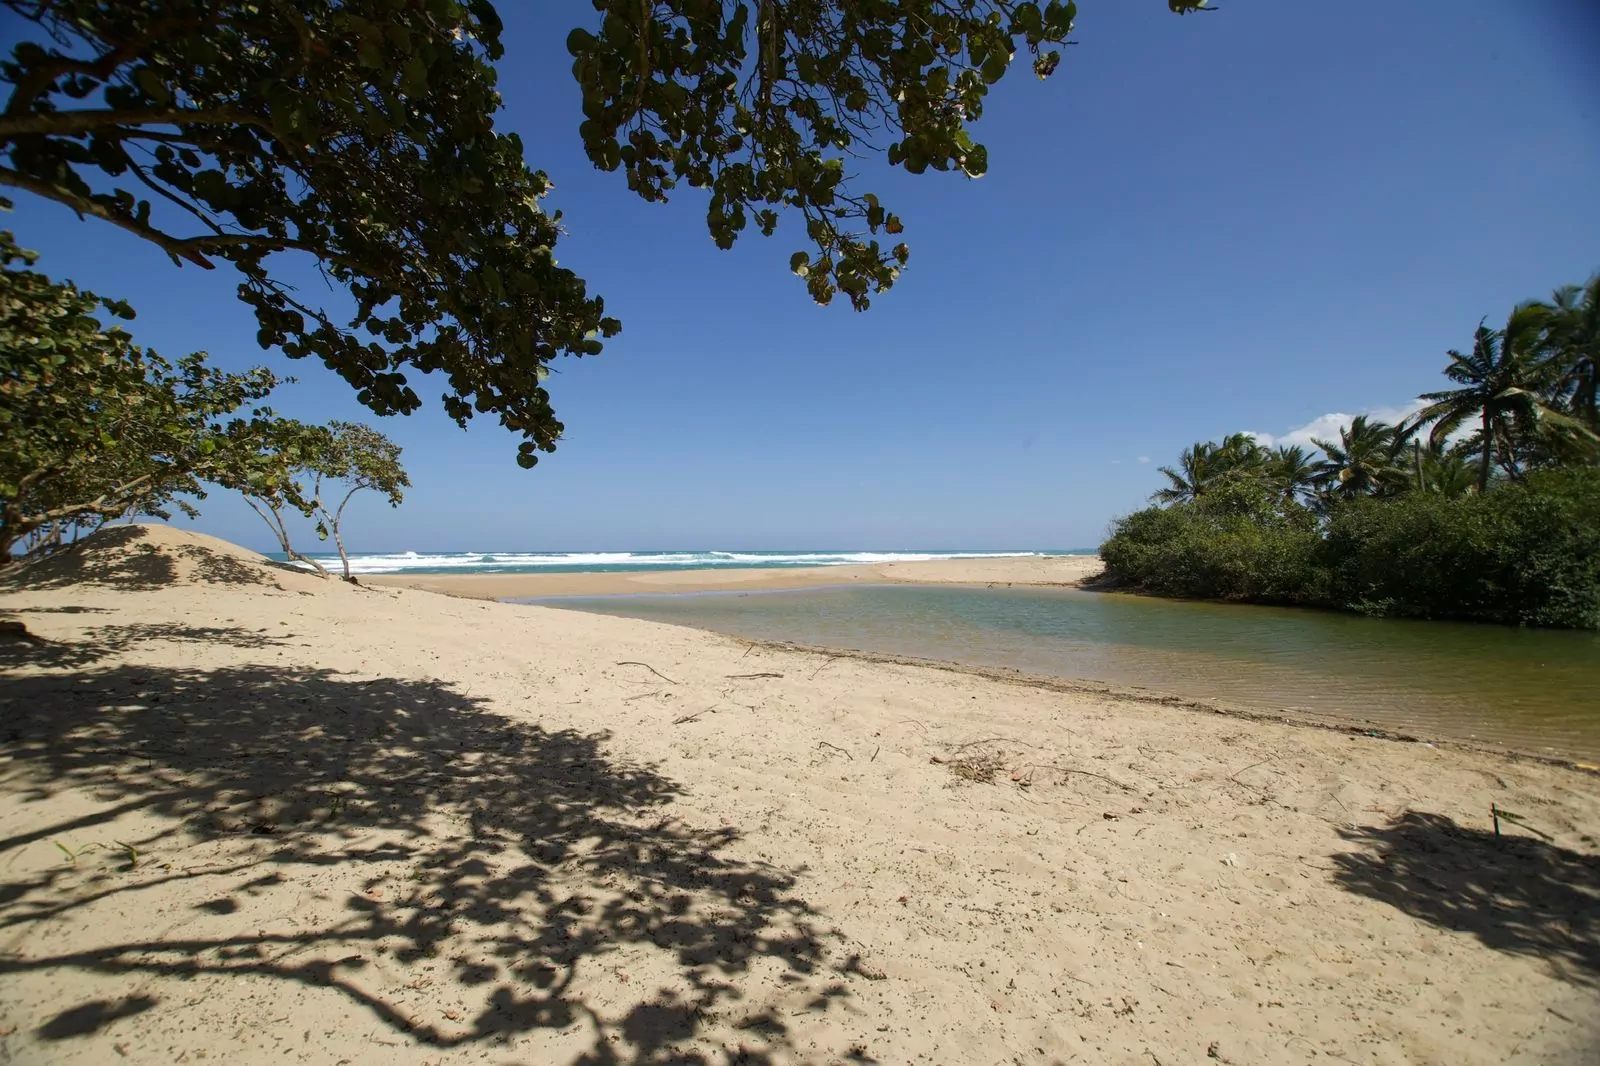 Medio Ambiente aprueba licencia ambiental para Punta Bergantín y autoriza construir 9 hoteles – 7dias.com.do